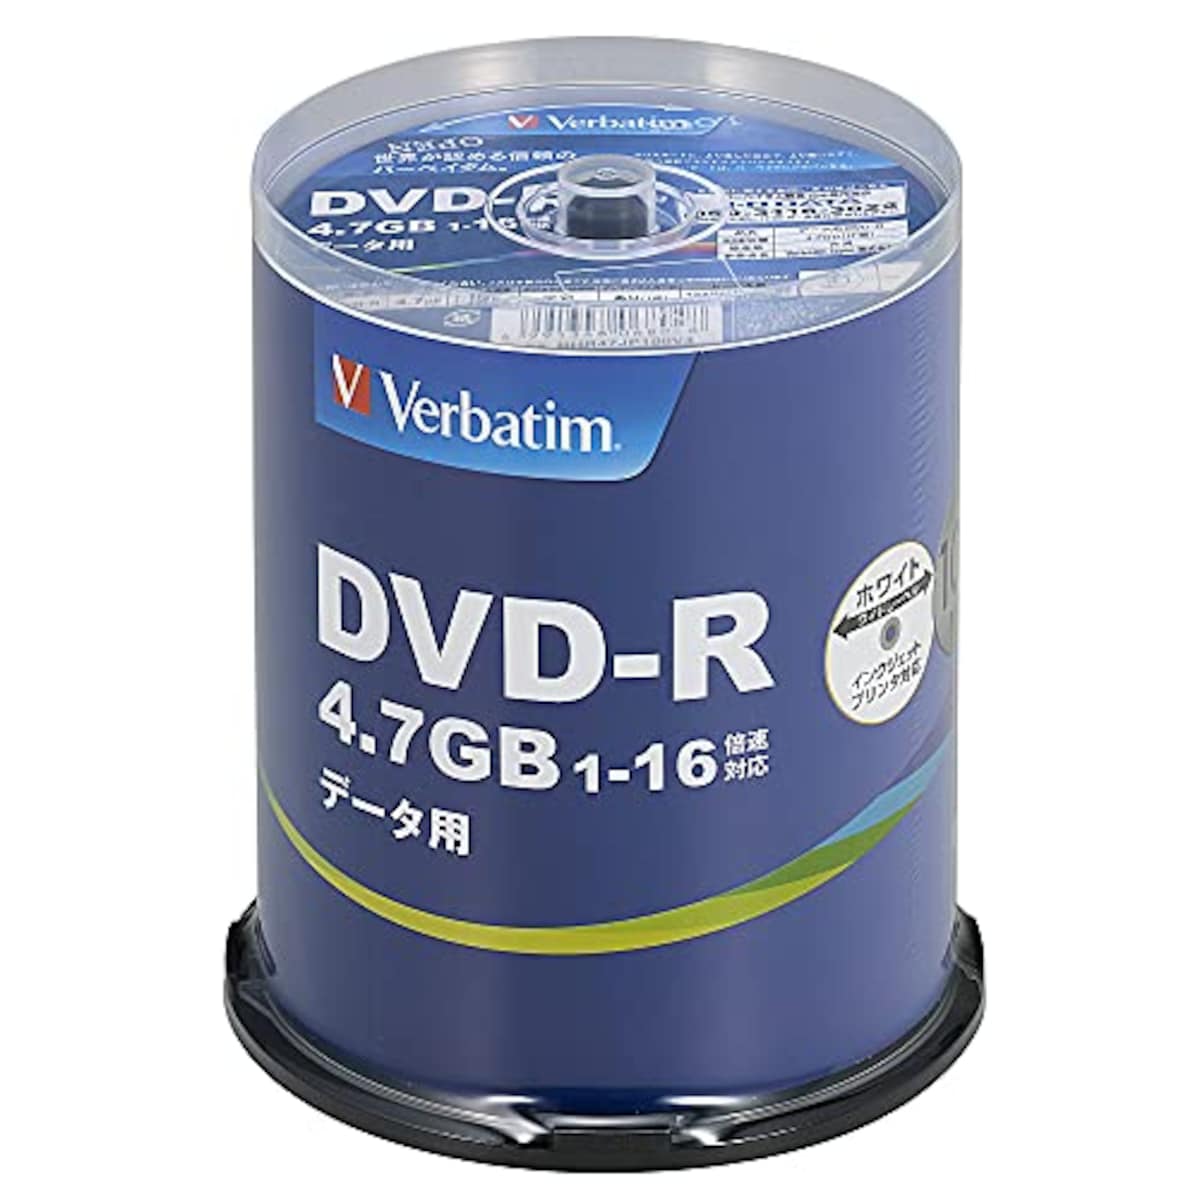 1回記録用 DVD-R